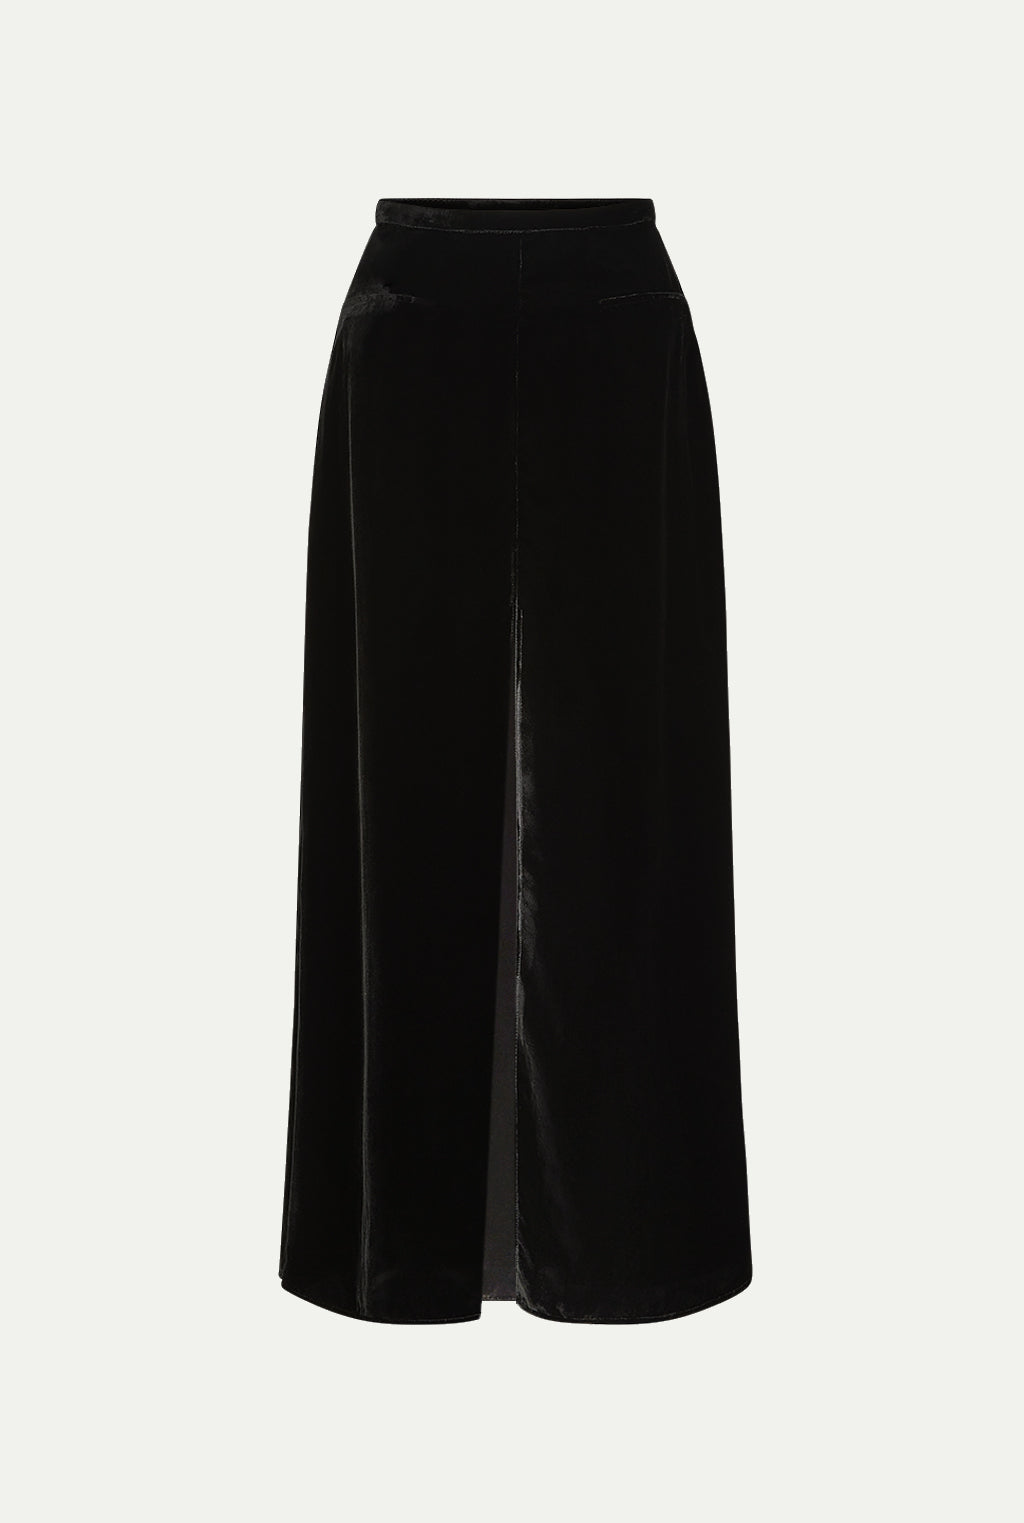 CASTELLO velvet skirt